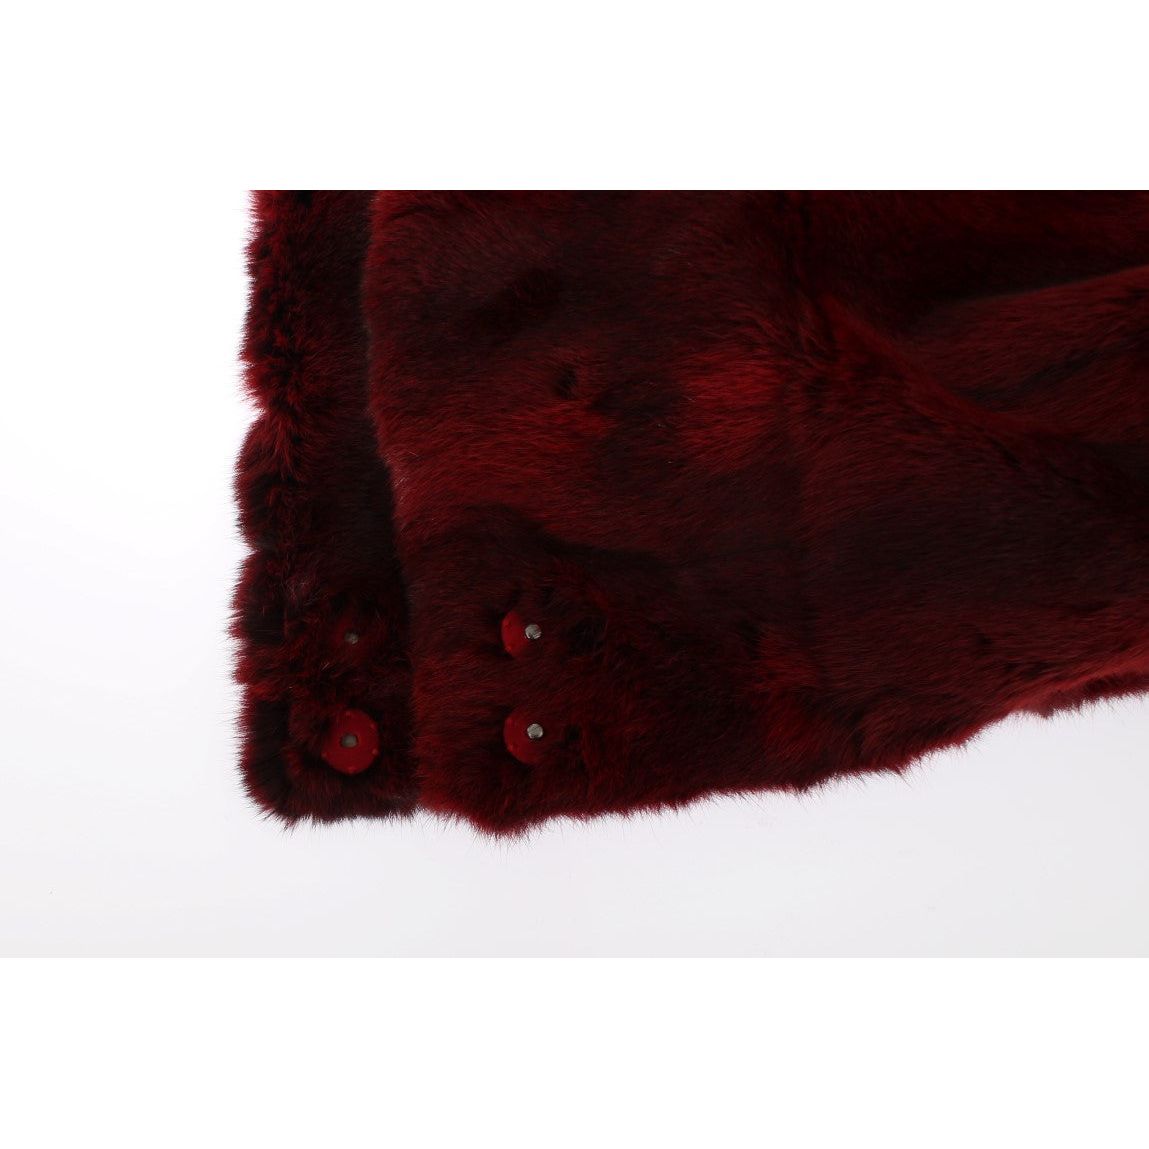 Dolce & Gabbana Luxurious Bordeaux Fur Hooded Scarf Wrap bordeaux-hamster-fur-crochet-hood-scarf-hat Hood Scarf 306431-bordeaux-hamster-fur-crochet-hood-scarf-hat-7.jpg